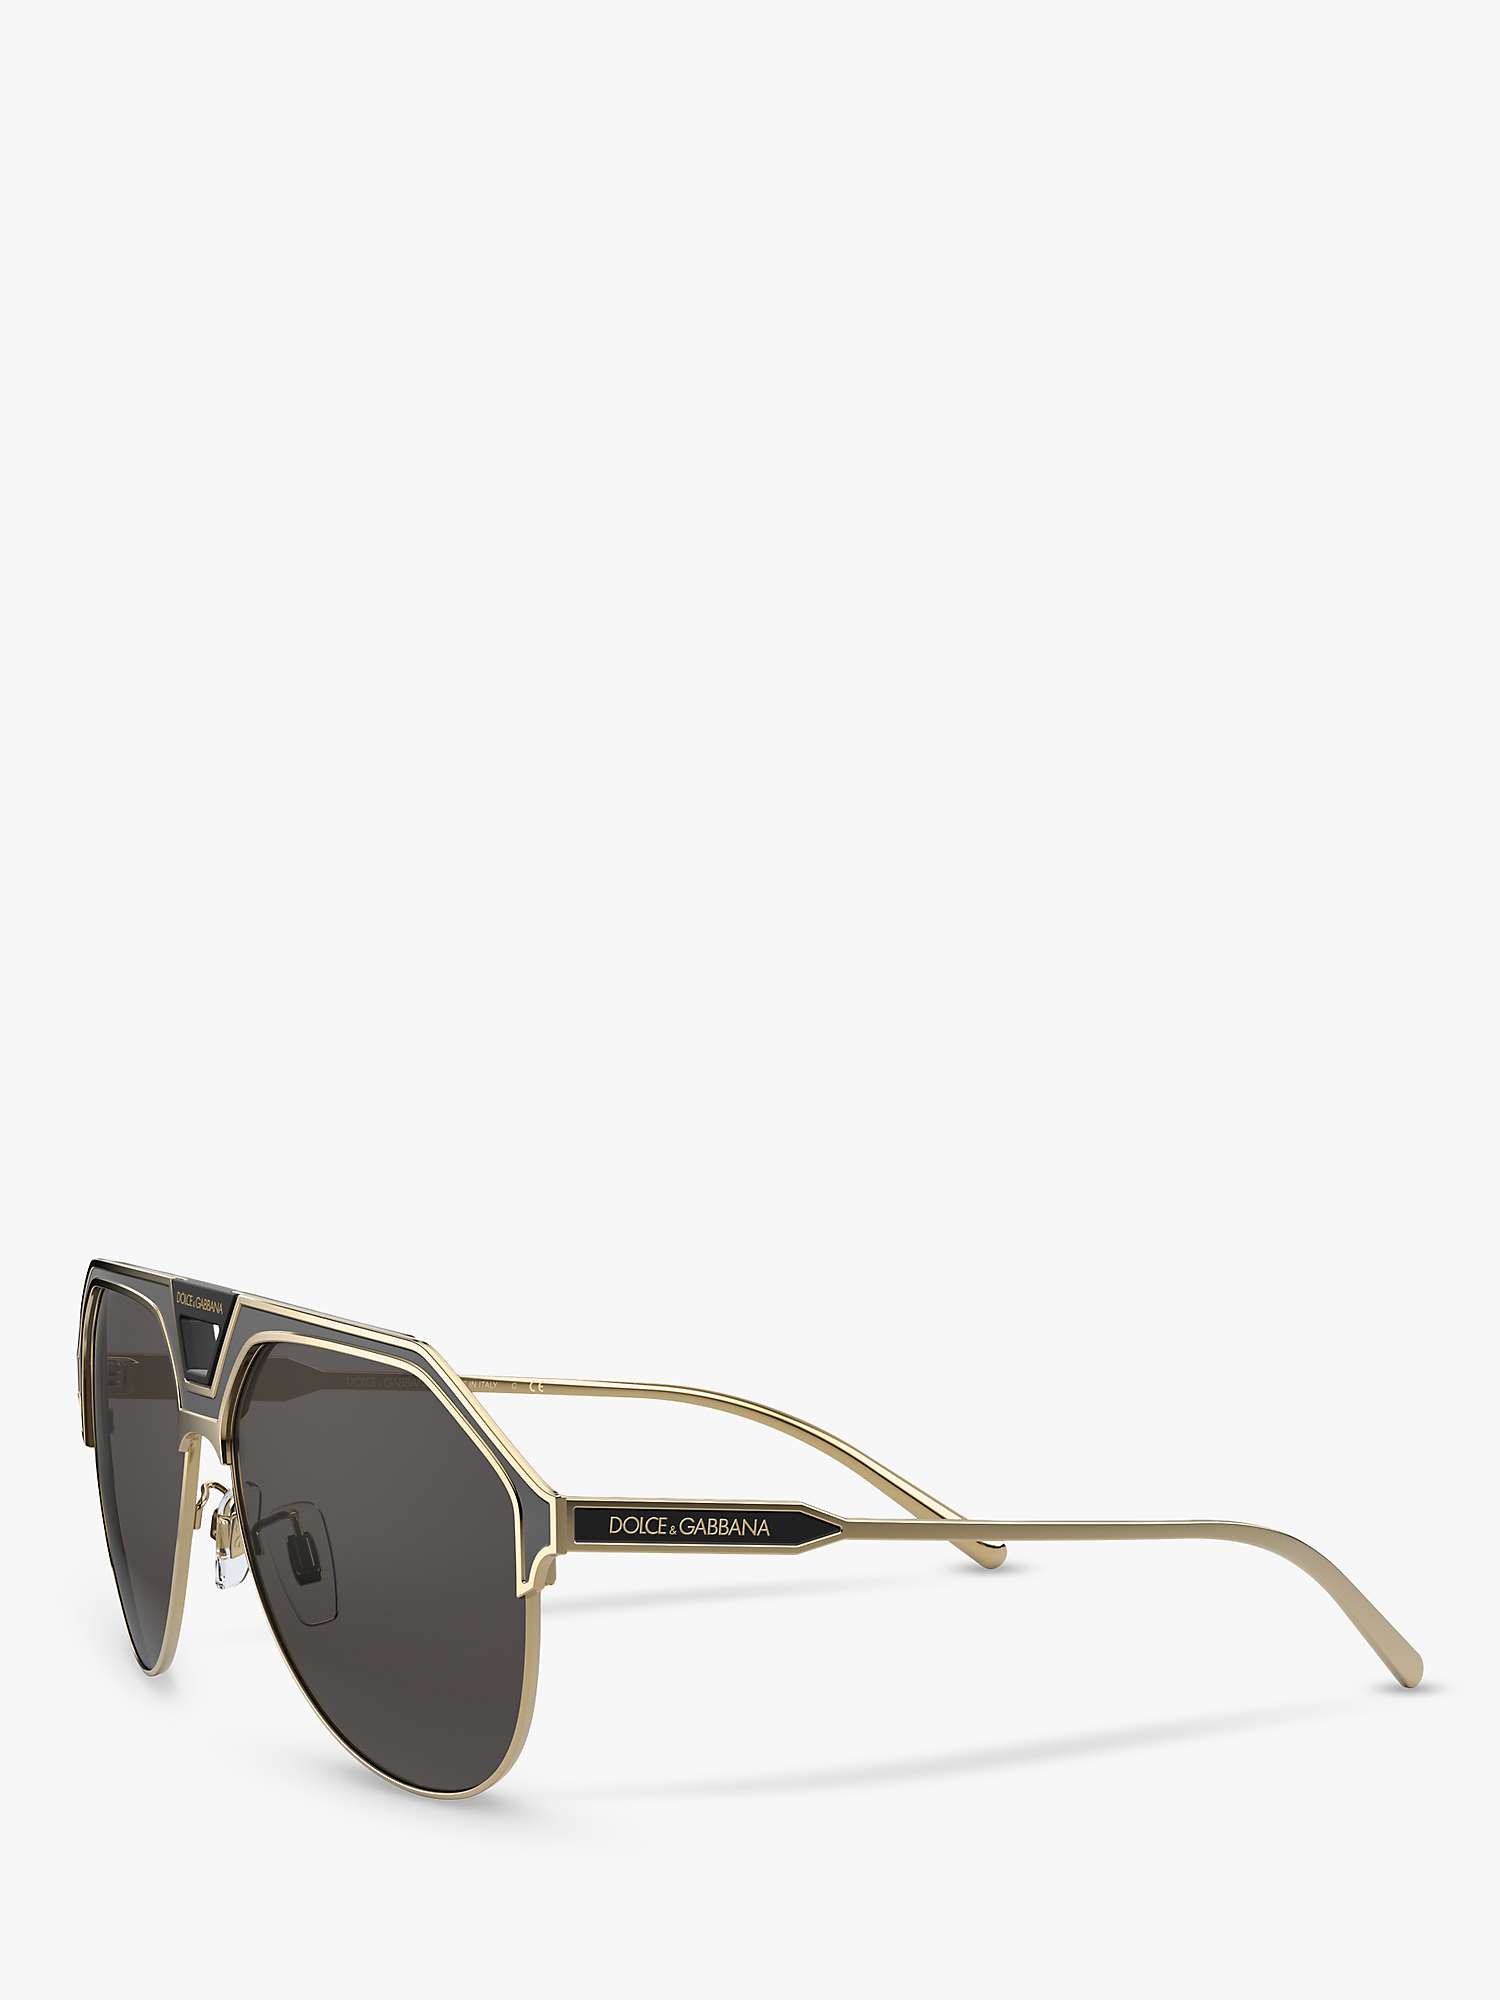 Buy Dolce & Gabbana DG2257 Men's Aviator Sunglasses, Black Online at johnlewis.com